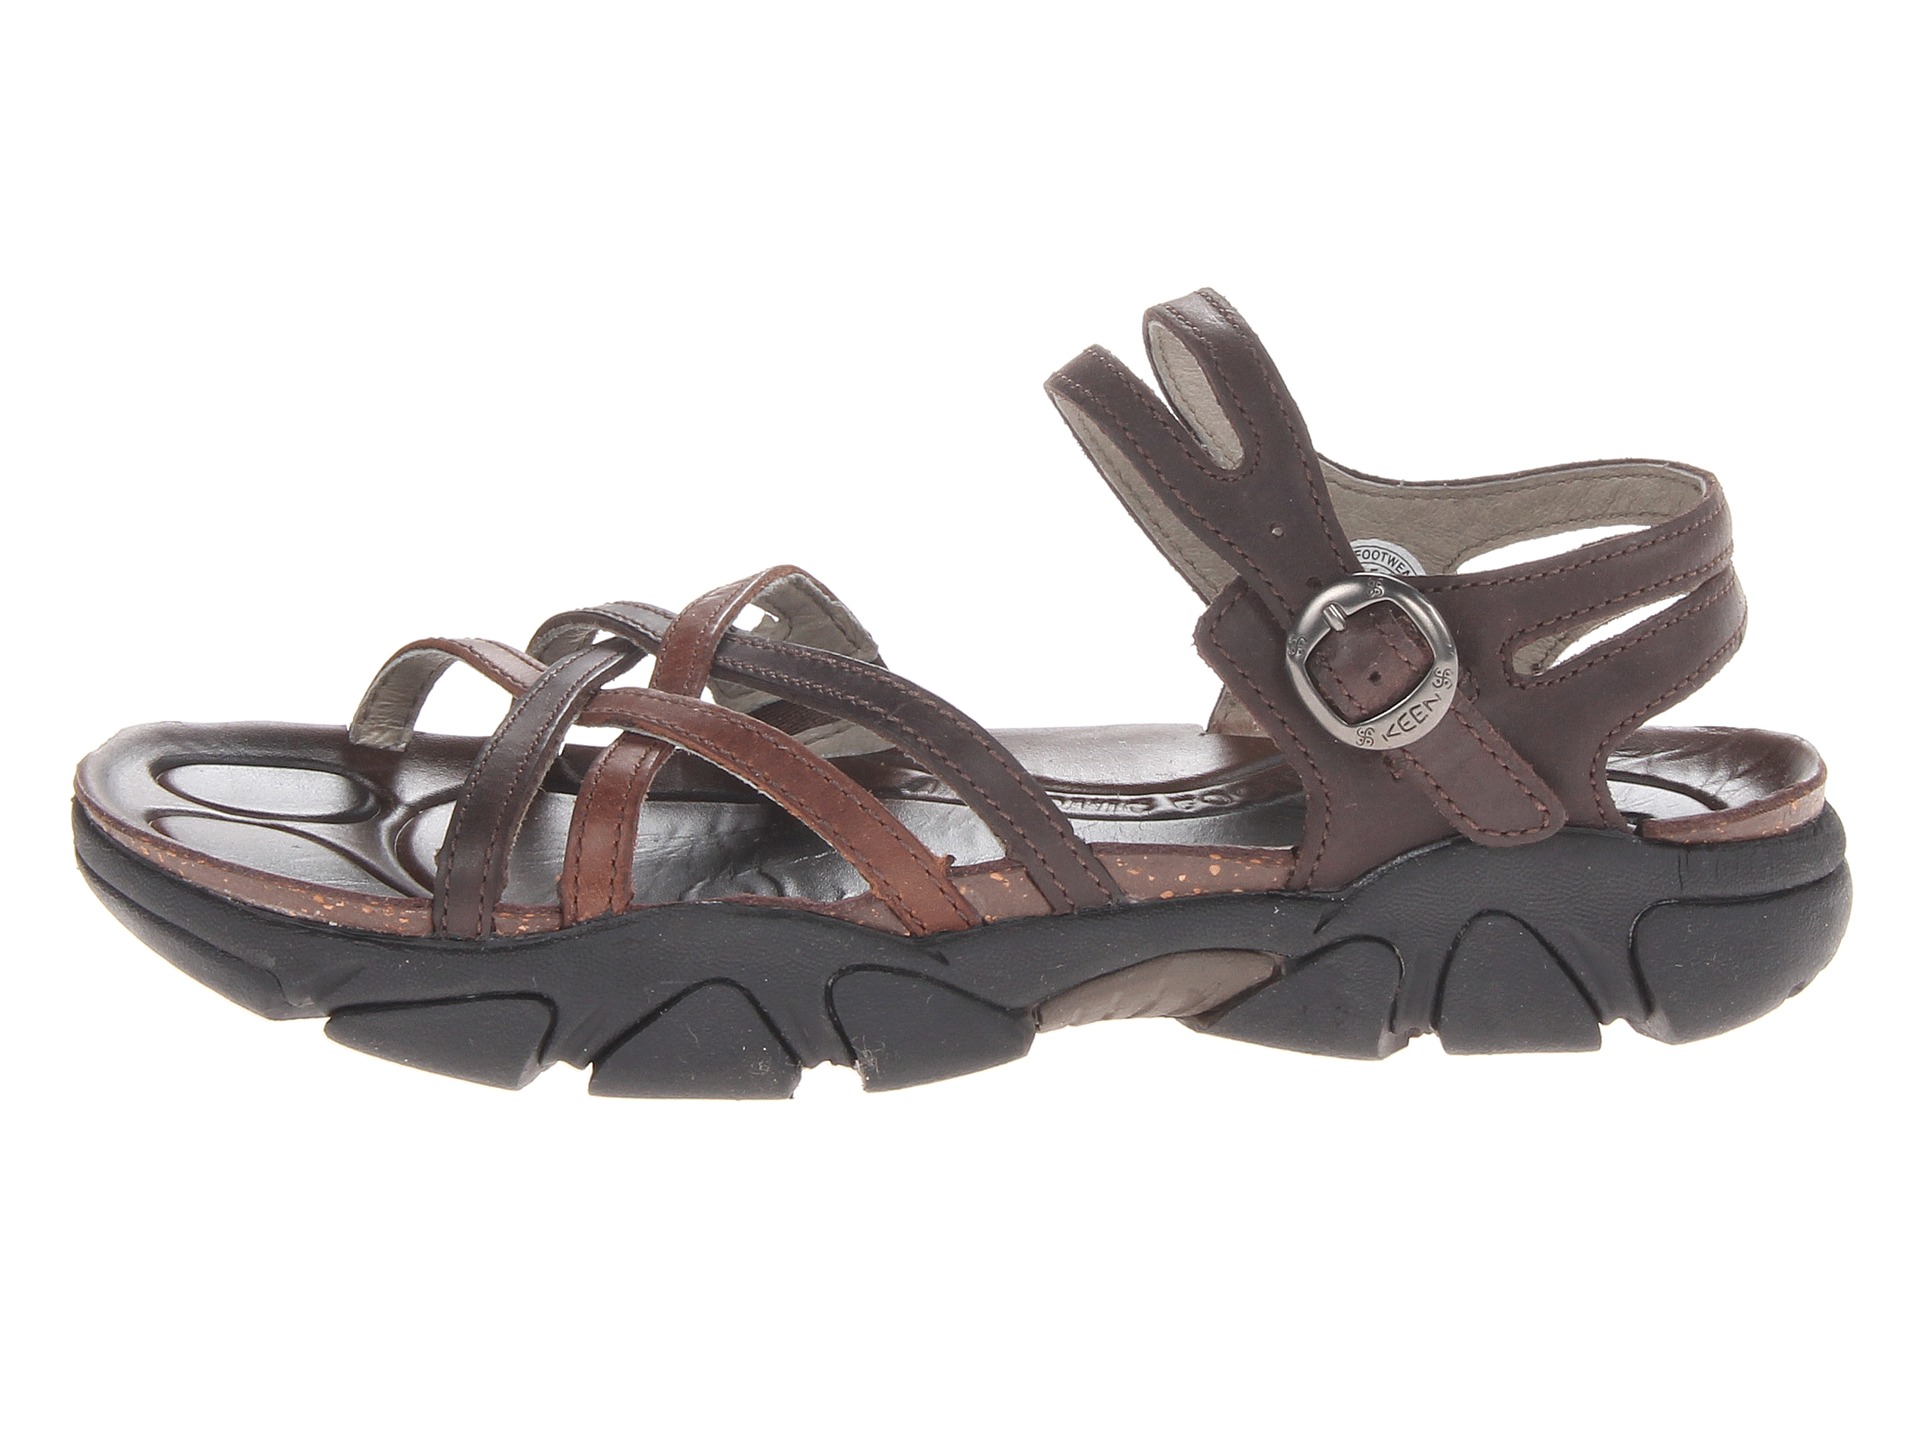 zappos keen womens sandals